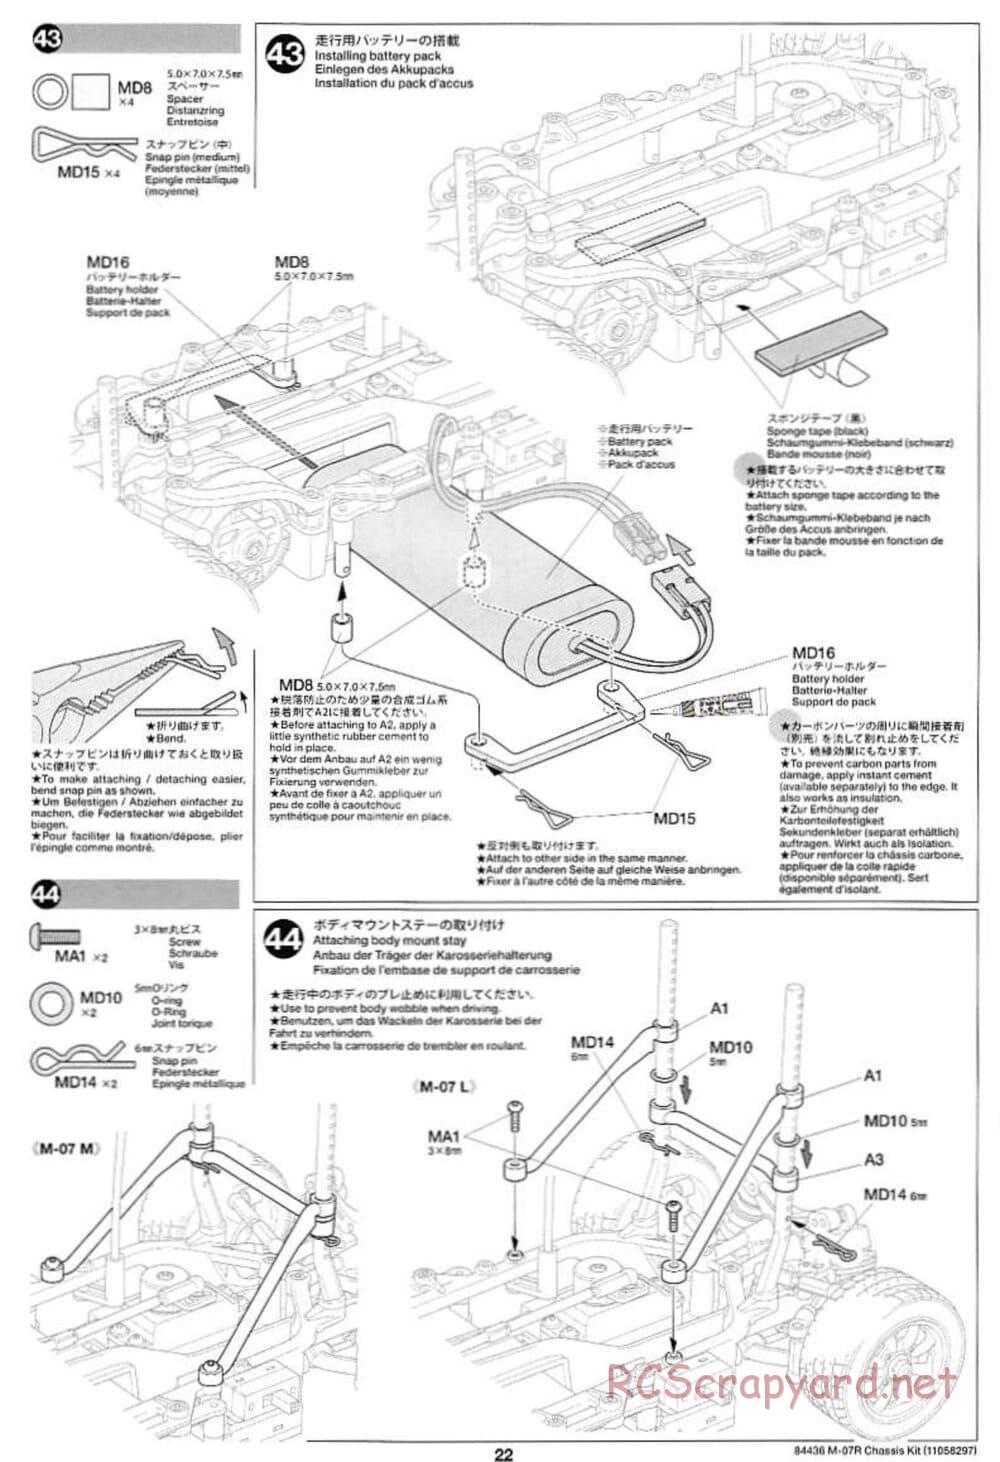 Tamiya - M-07R Chassis - Manual - Page 22